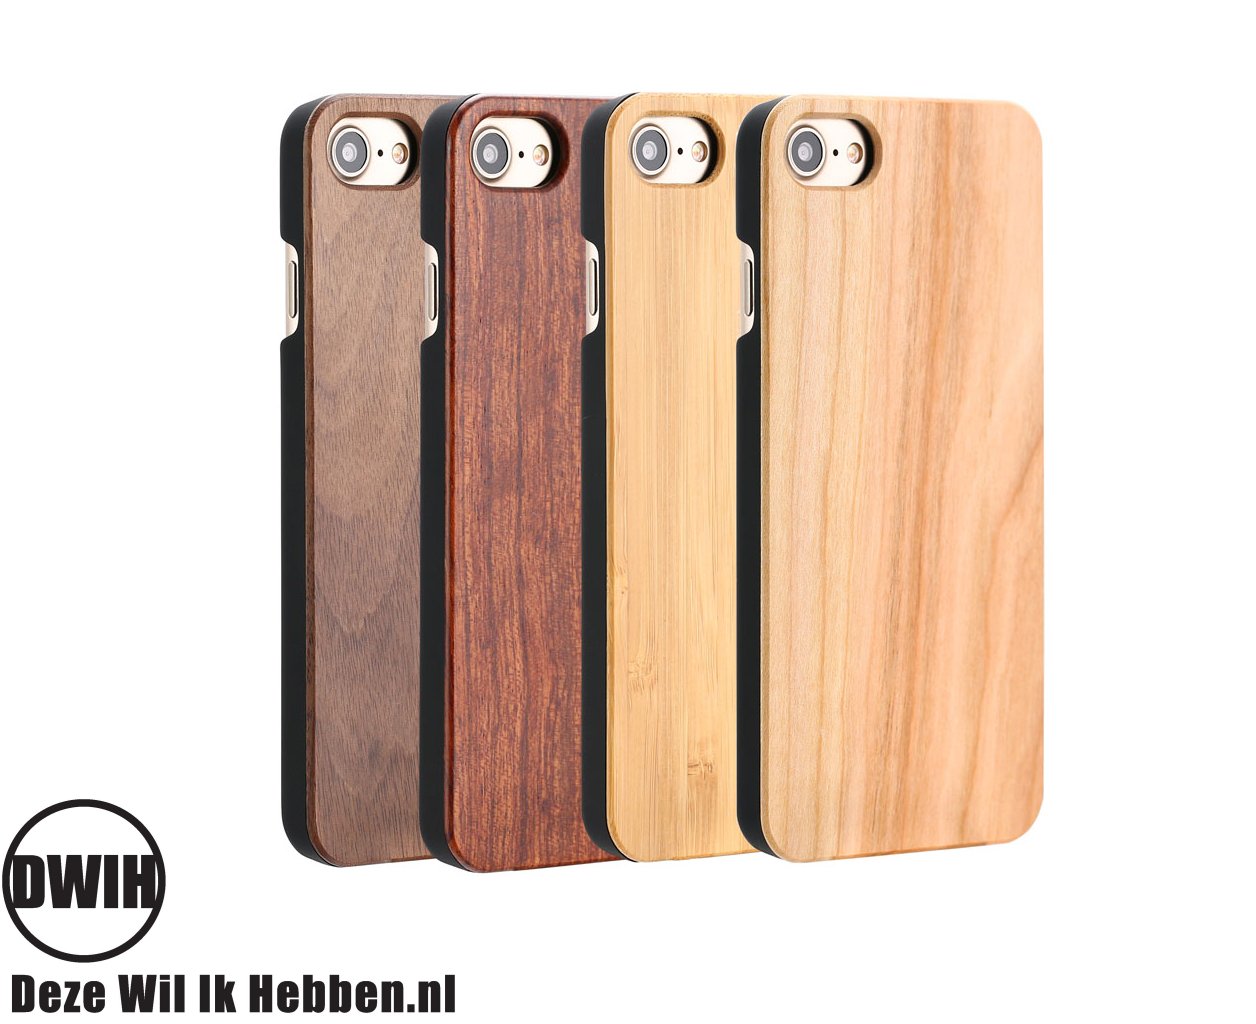 Woestijn scheiden nek iPhone 7, 8 en SE 2020 houten case – Bamboo - Deze Wil Ik Hebben .nl